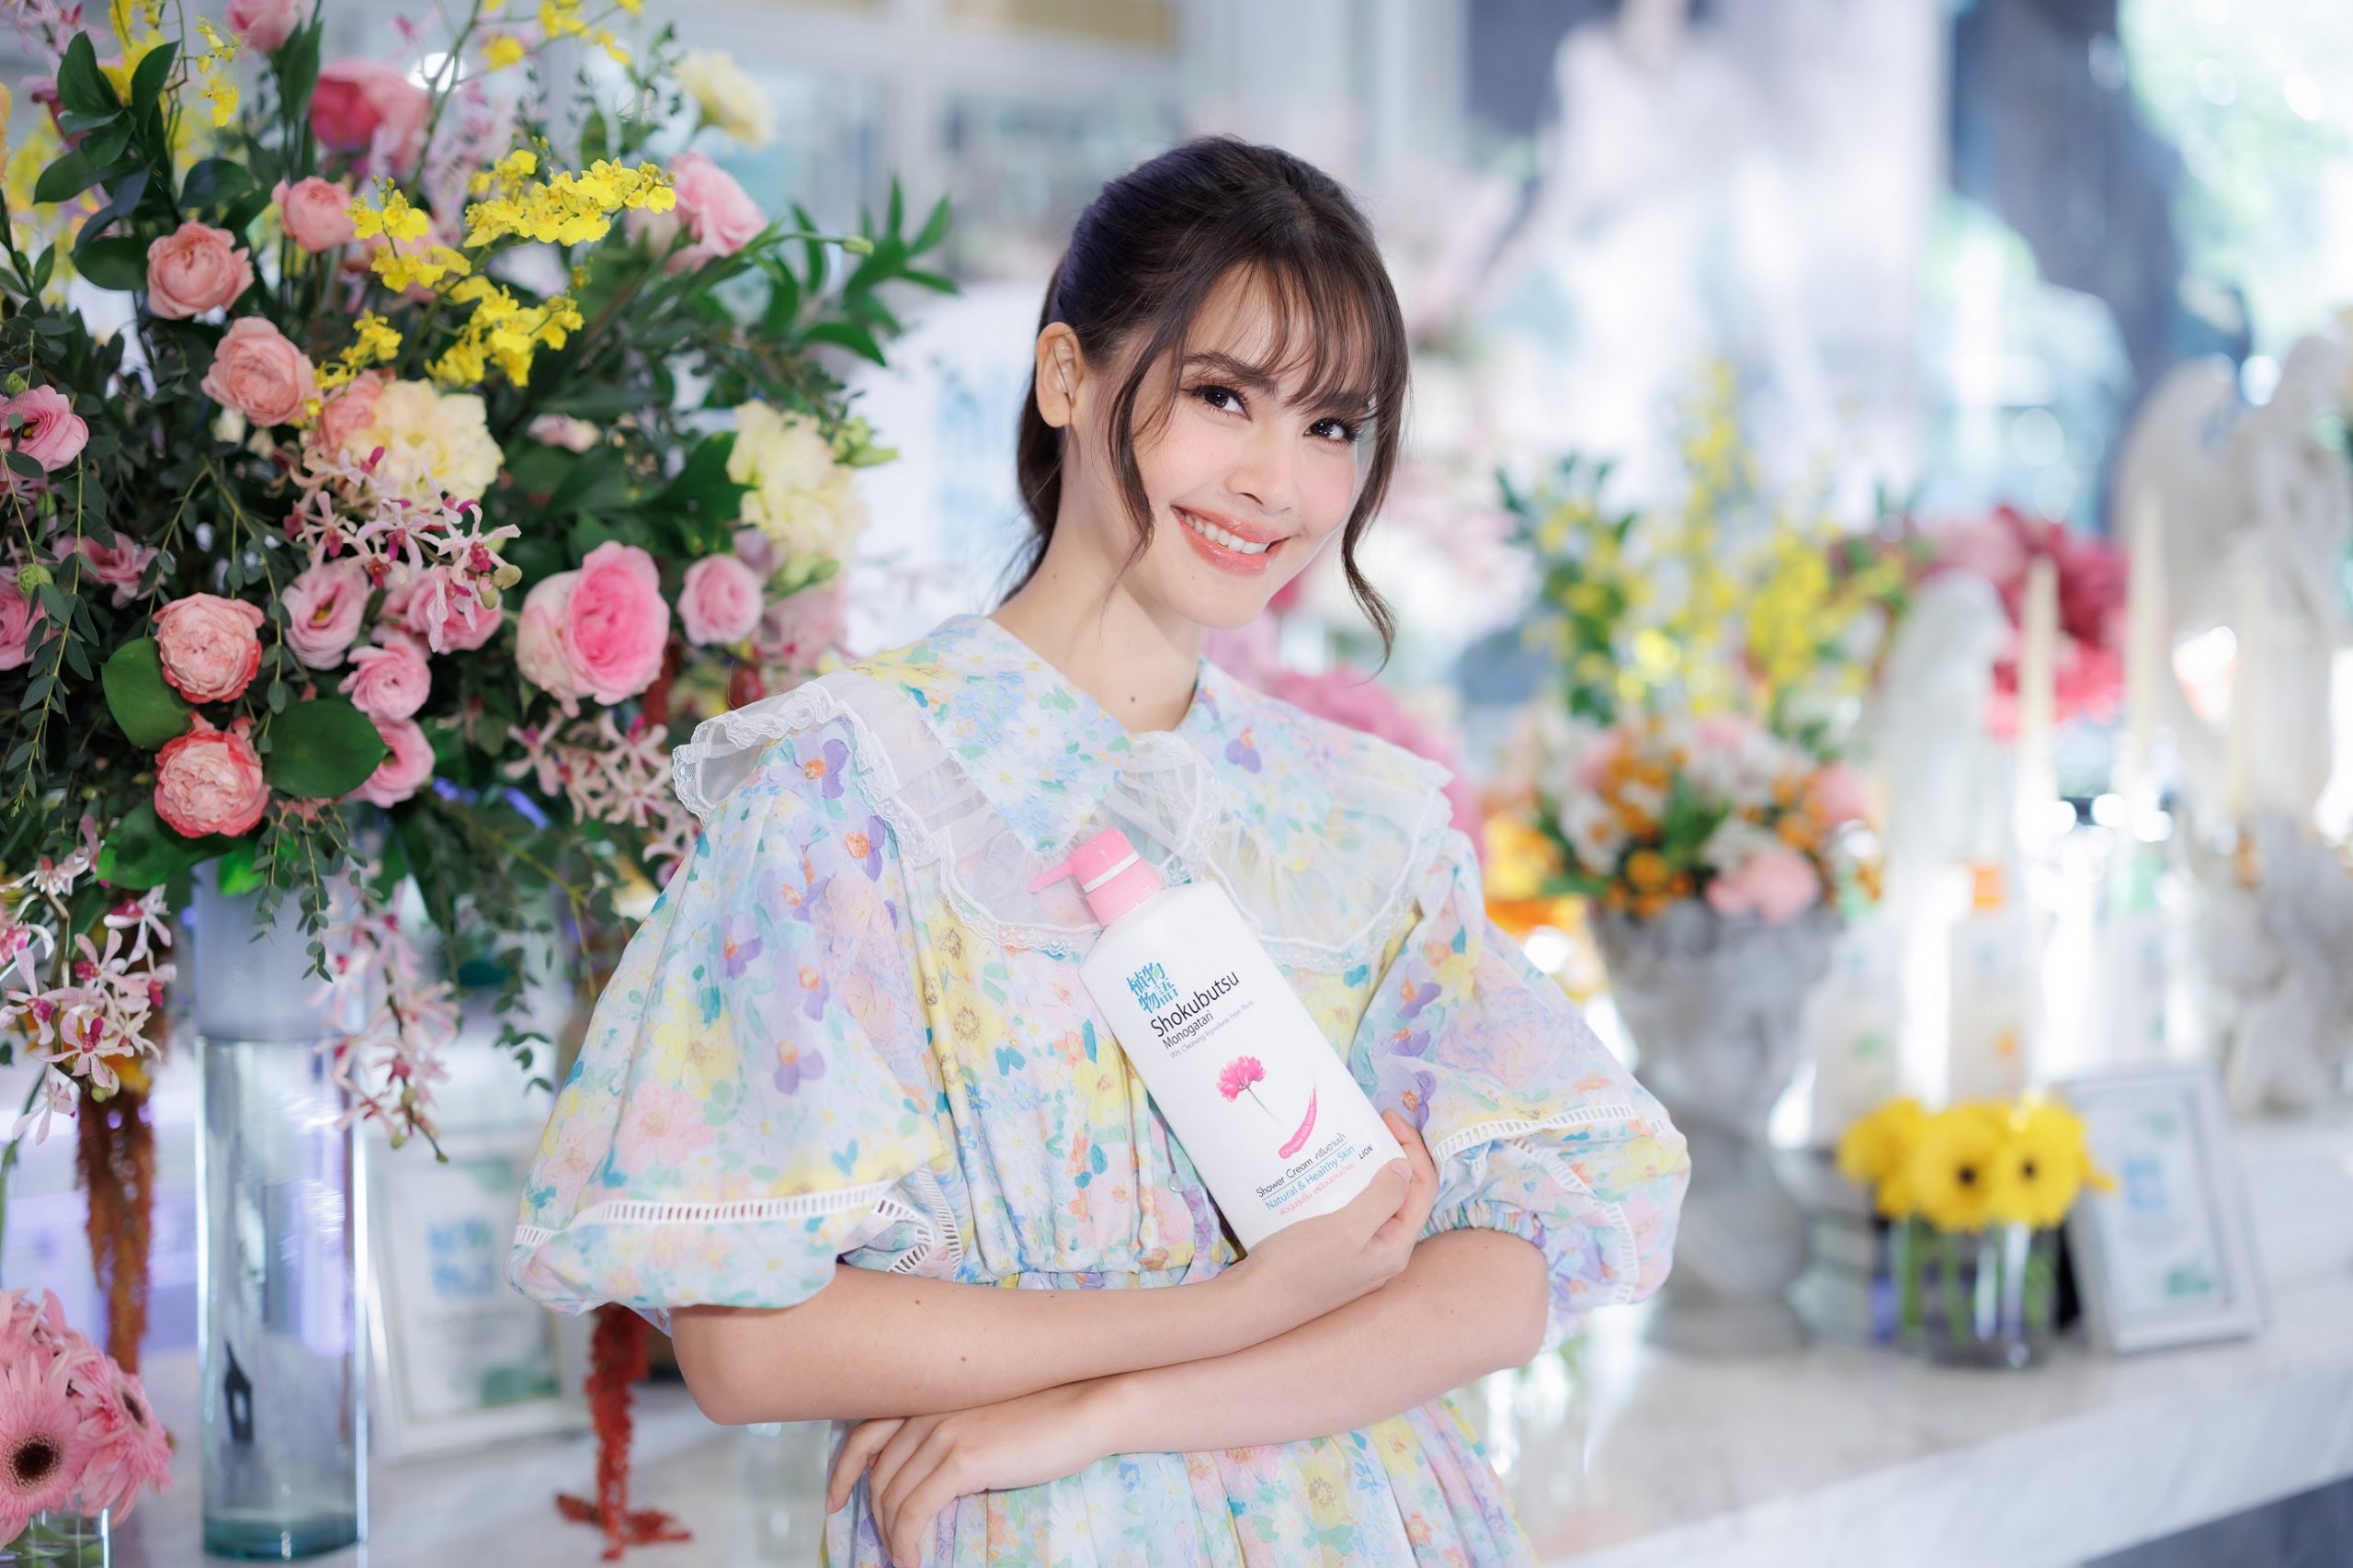 ‘โชกุบุสซึ X ญาญ่า” เปิดโมเมนต์ความอบอุ่น กับ งาน “Shokubutsu Exclusive Party” ฉลองความสำเร็จยอดขายครีมอาบน้ำอันดับ 1 ต่อเนื่อง 3 ปีซ้อนในประเทศไทย